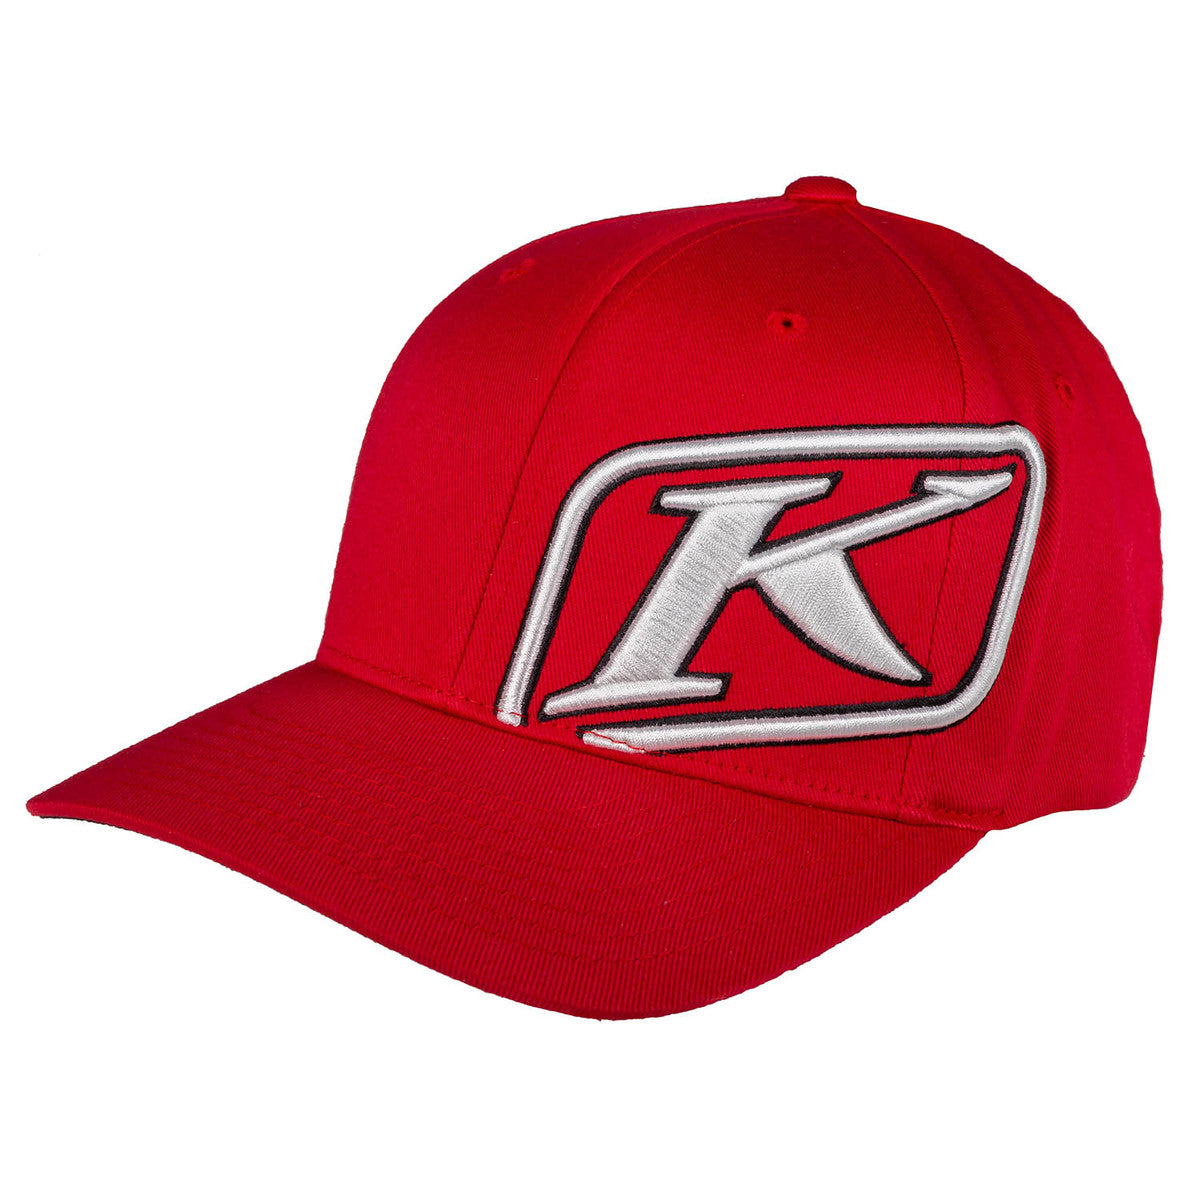 Klim Rider Red Hat